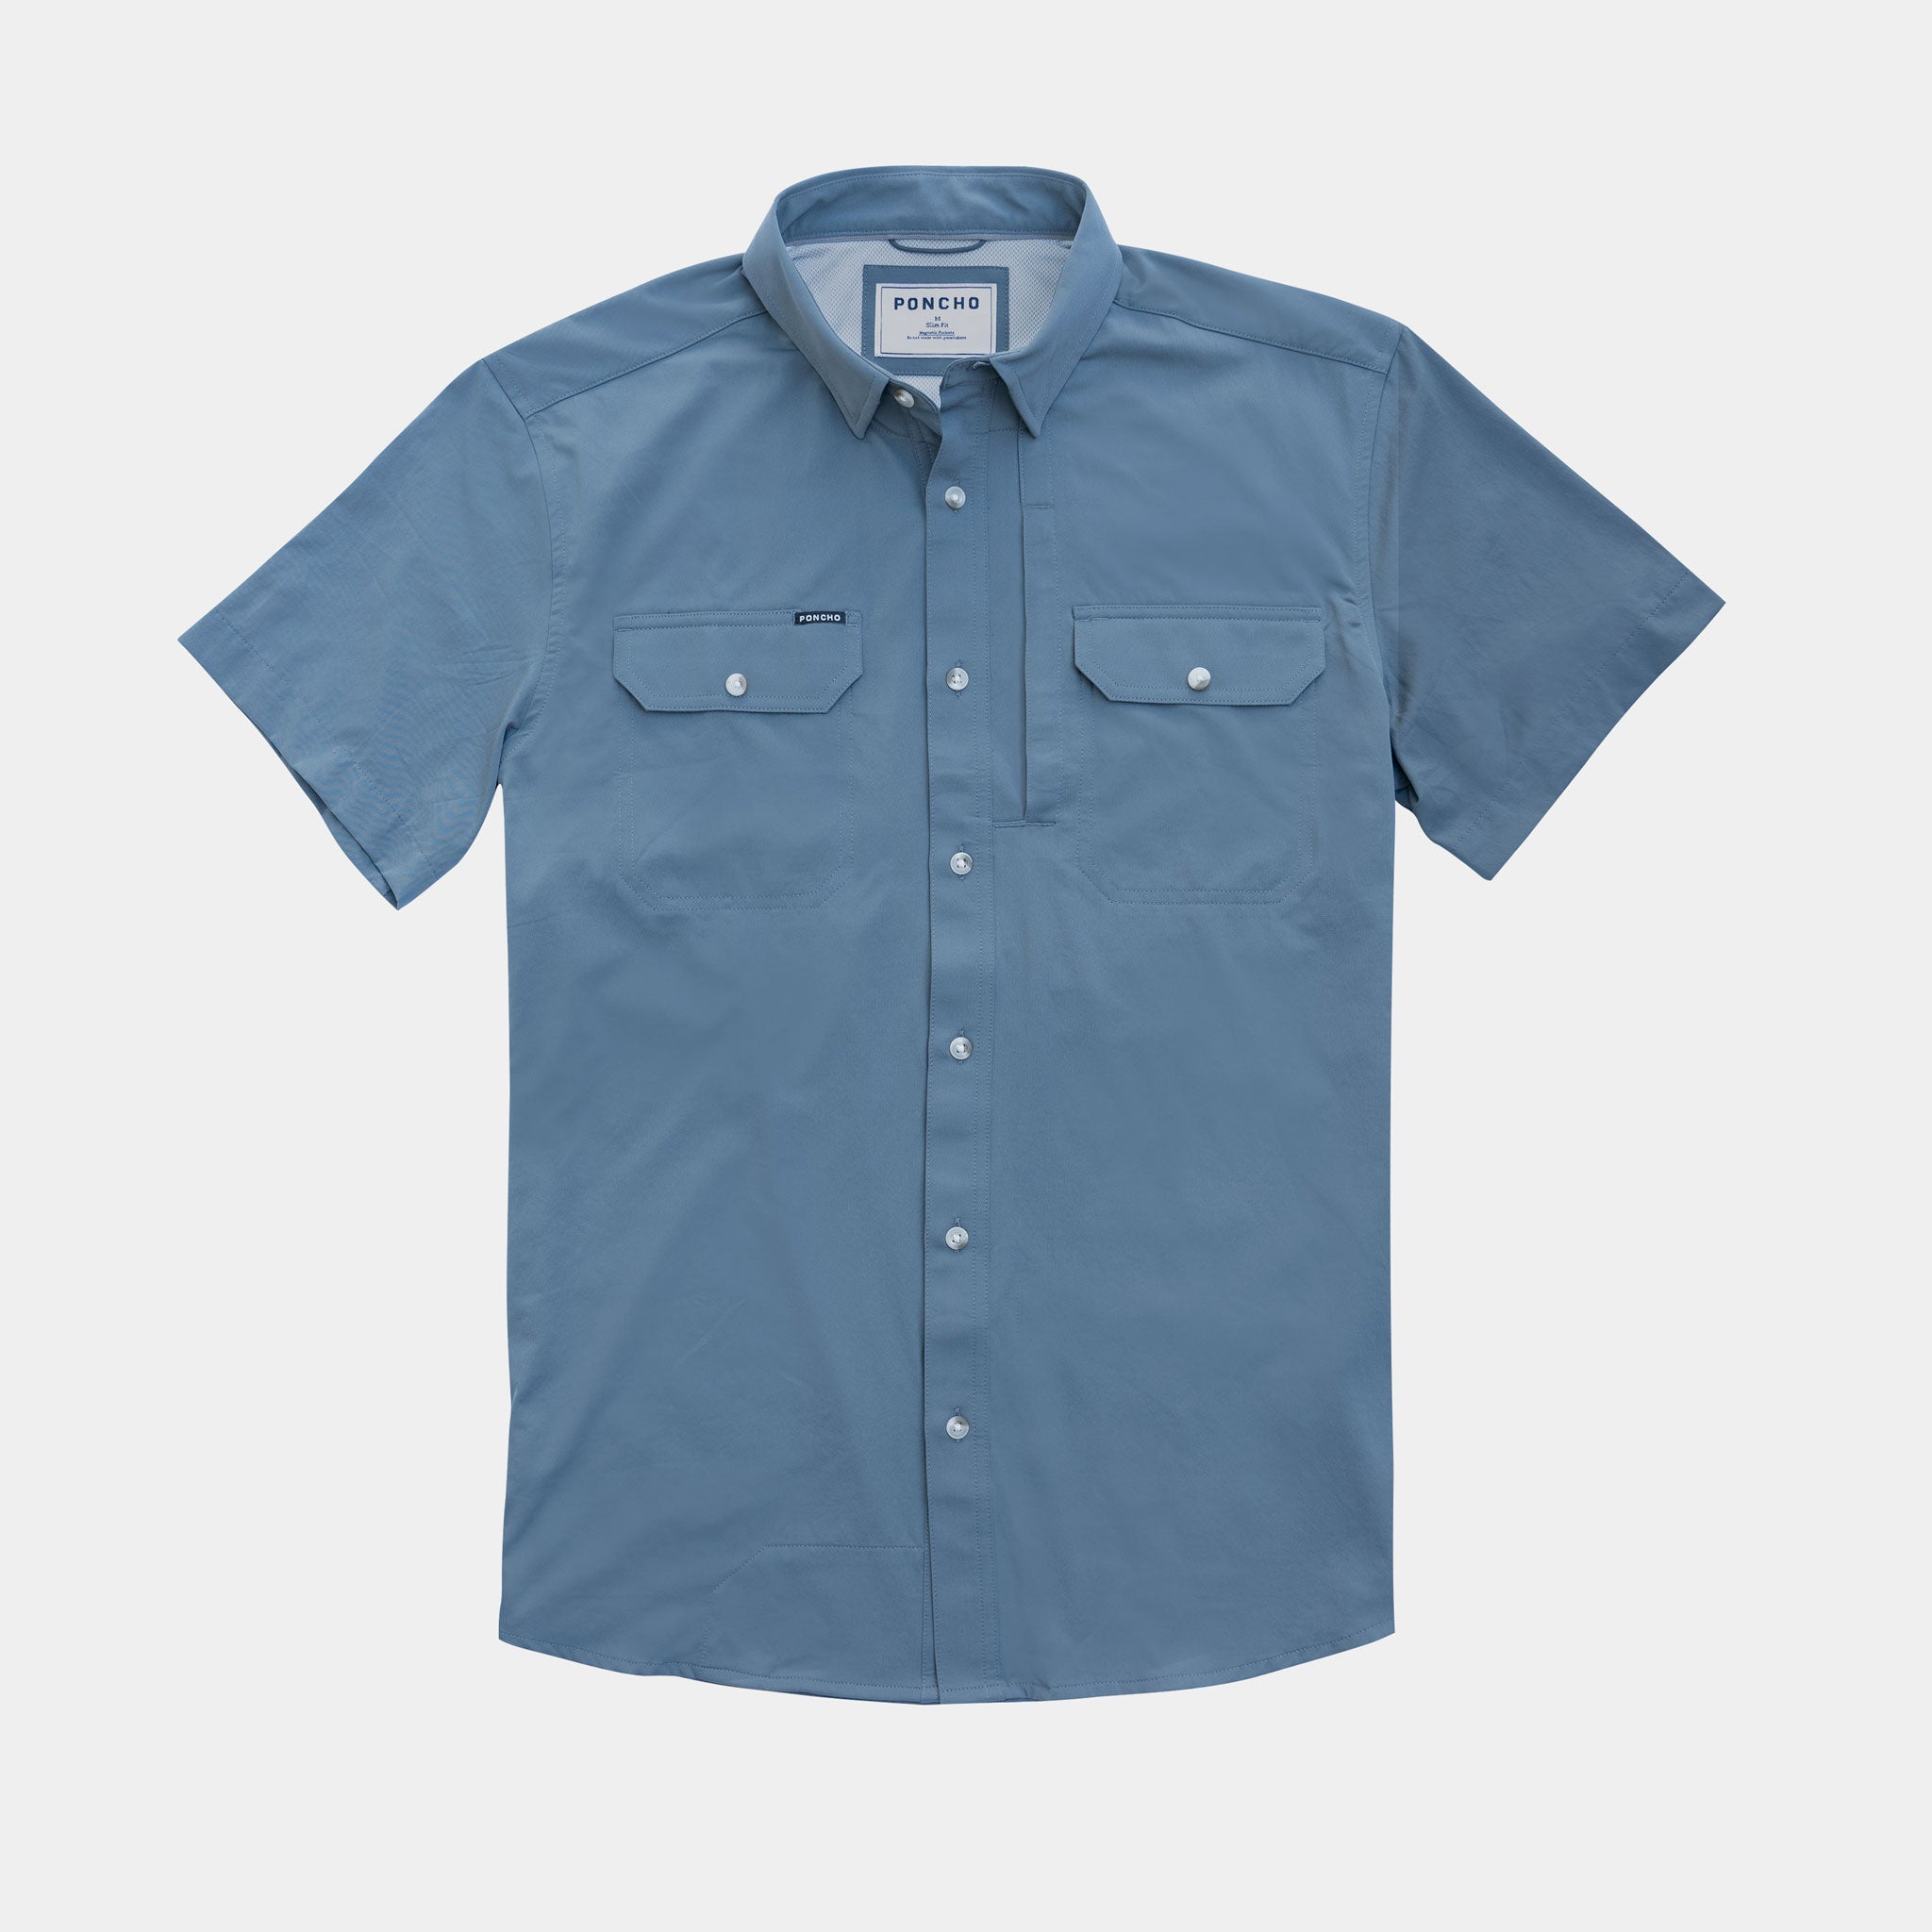 Short sleeve blue shirt